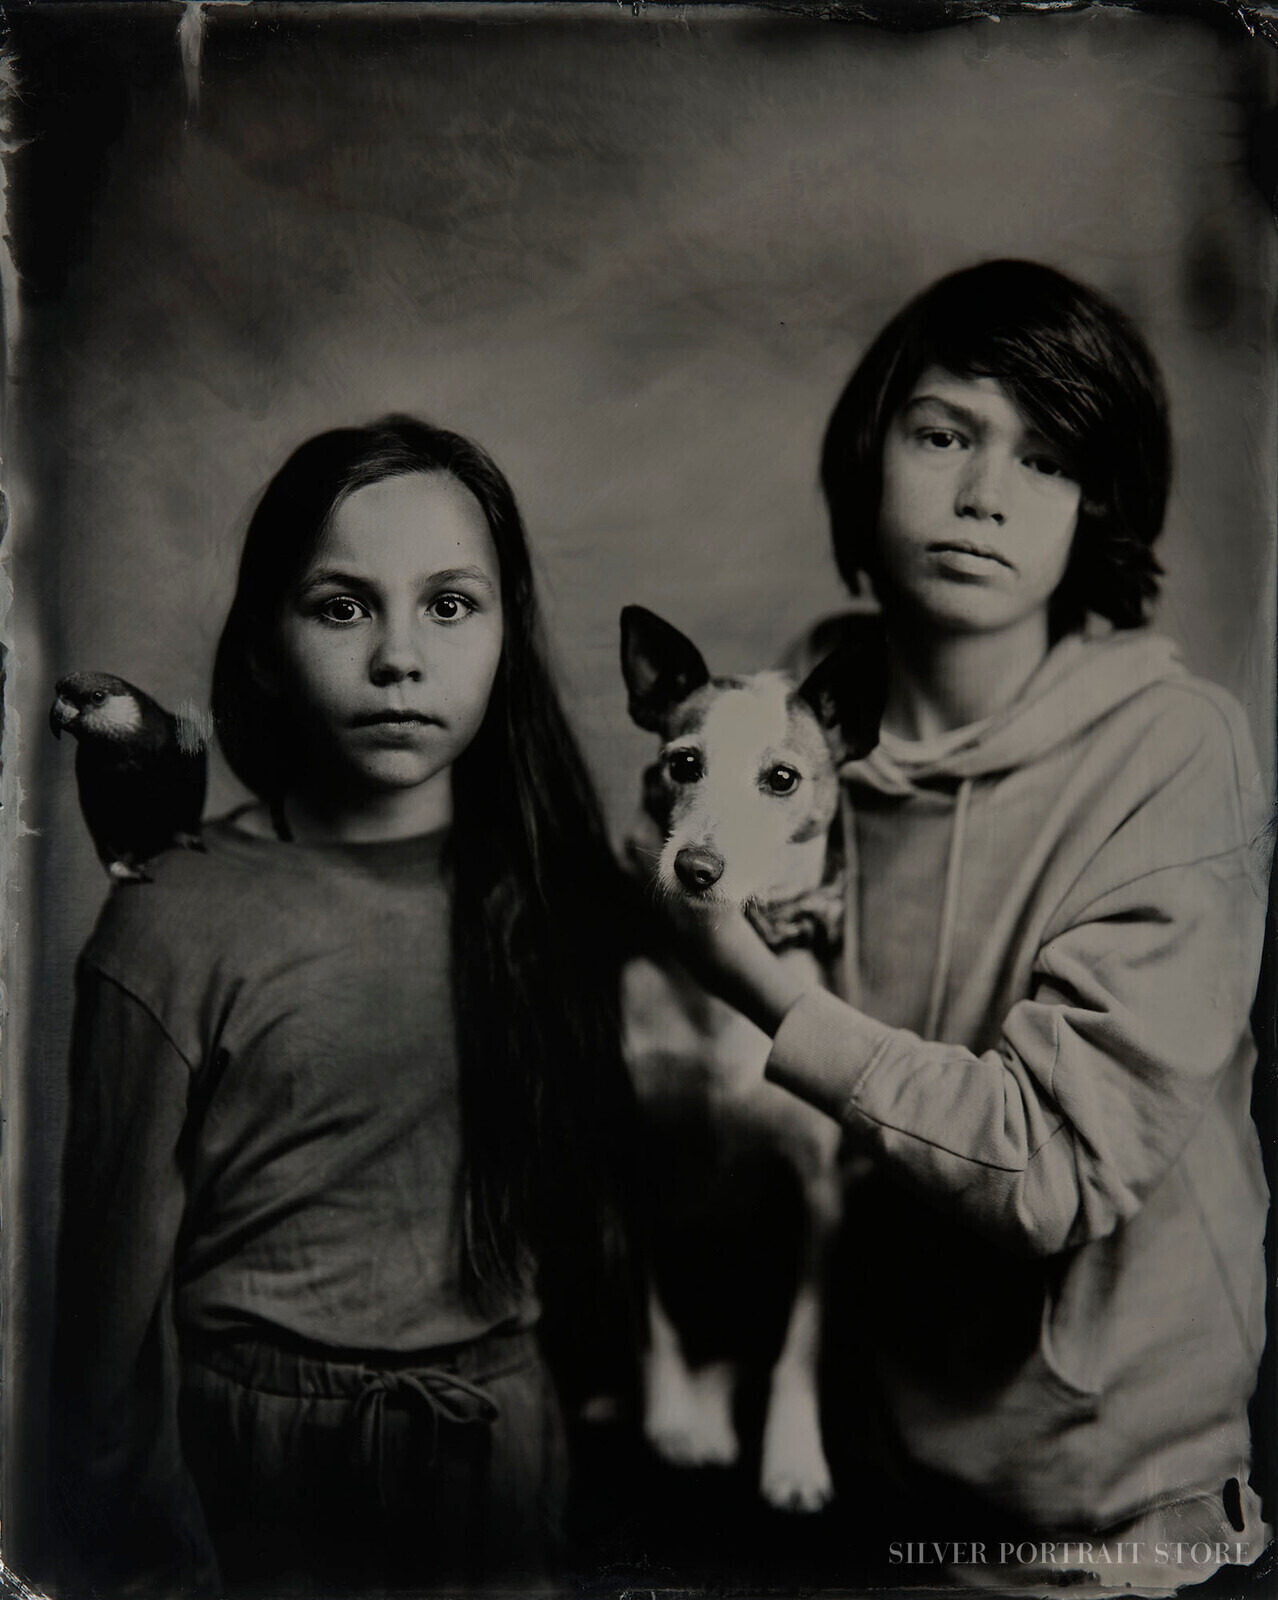 Juan, Leah, Penny & Vigo-Silver Portrait Store-Wet plate collodion-Black glass Ambrotype 35 x 43 cm.